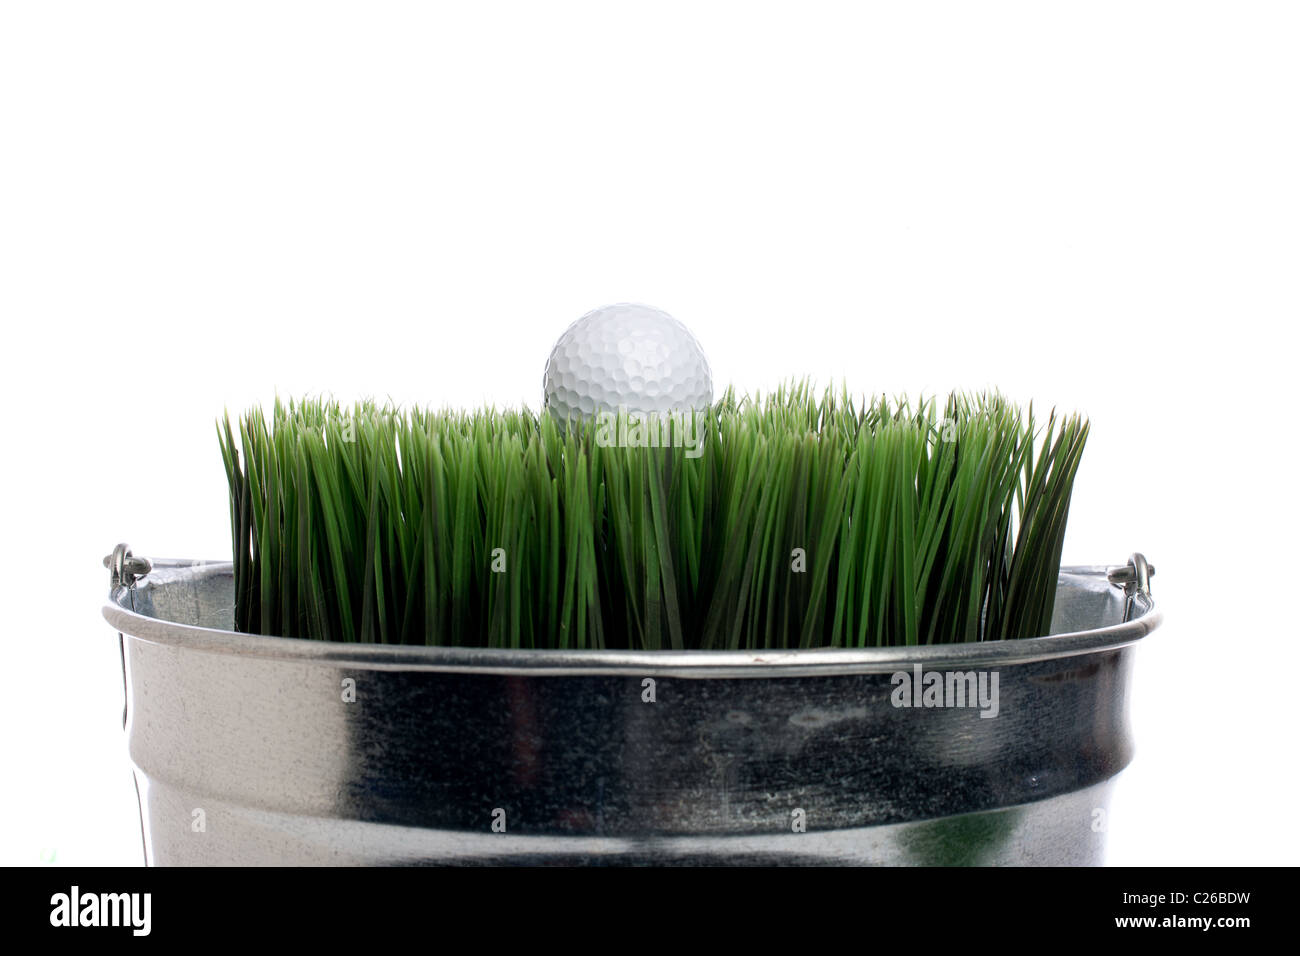 Horizontales Bild eines Golfballs auf Rasen in einem kleinen Behälter auf weiß. Behälter-Gartenarbeit Stockfoto